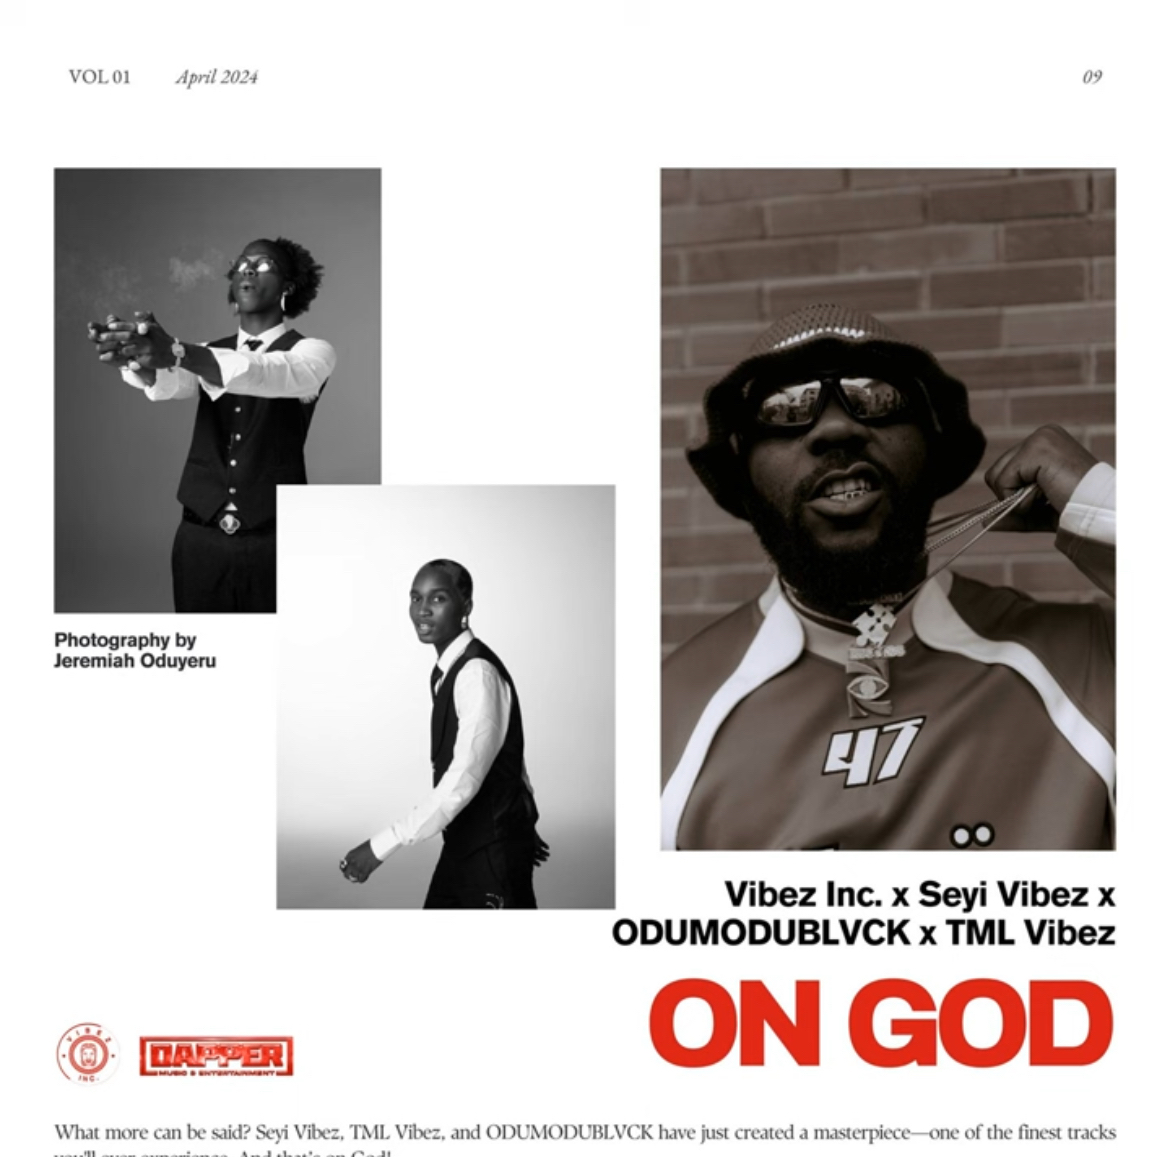 Vibez Inc On God Ft. Seyi Vibez, ODUMODUBLVCK & TML Vibez